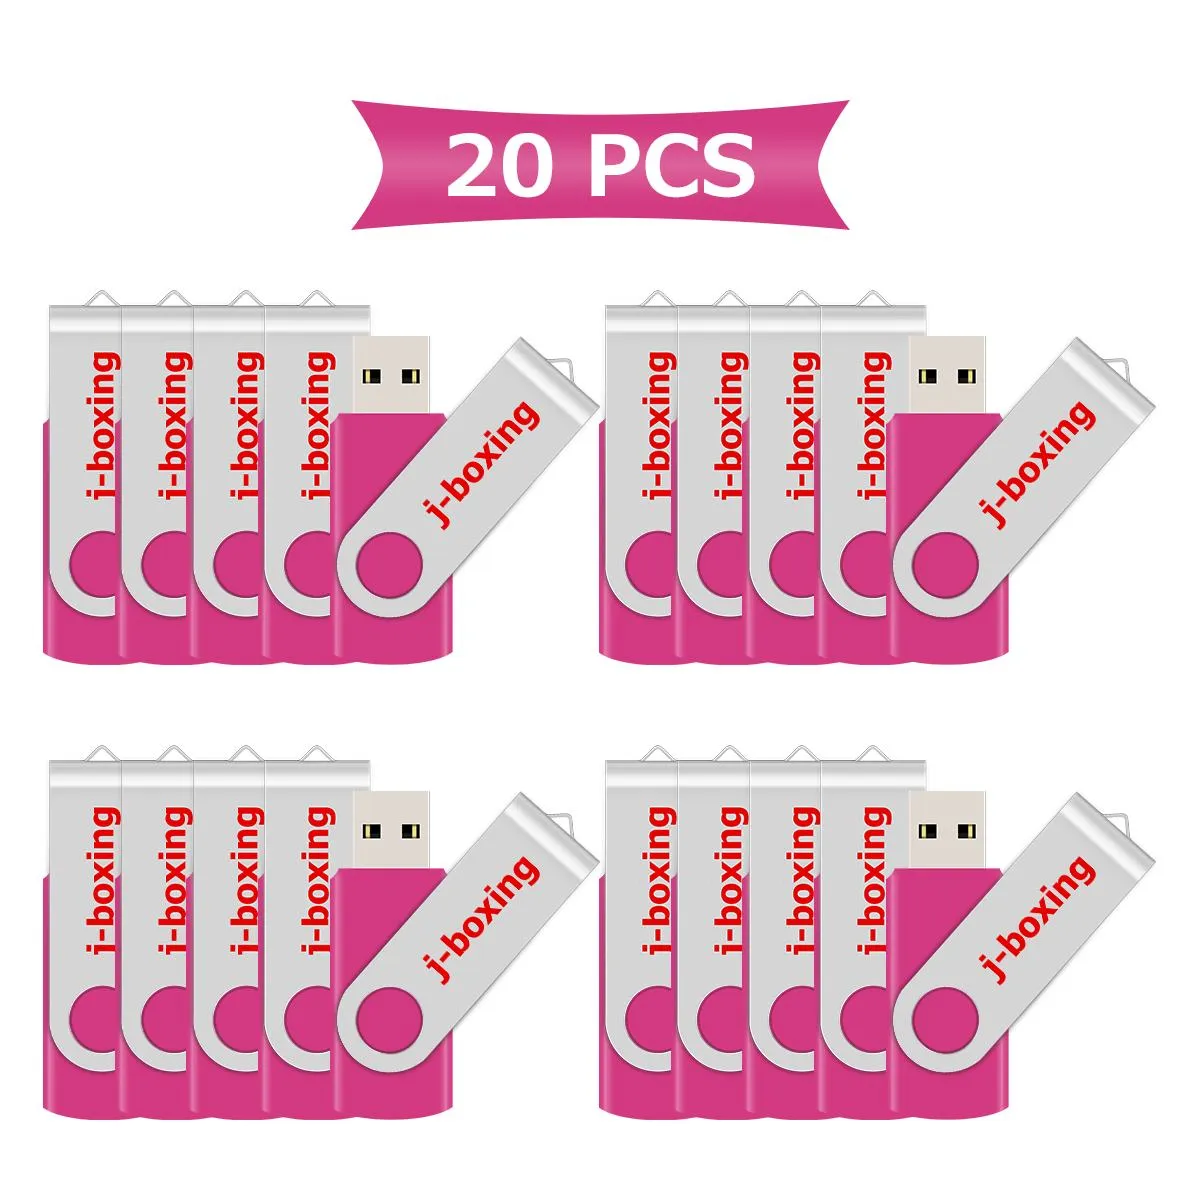 핑크 대량 20PCS 32 기가 바이트 USB 플래시 펜 스토리지 드라이브 컴퓨터 노트북 태블릿 엄지에 대한 회전 회전 금속 플래시 메모리 스틱 32 기가 바이트 드라이브